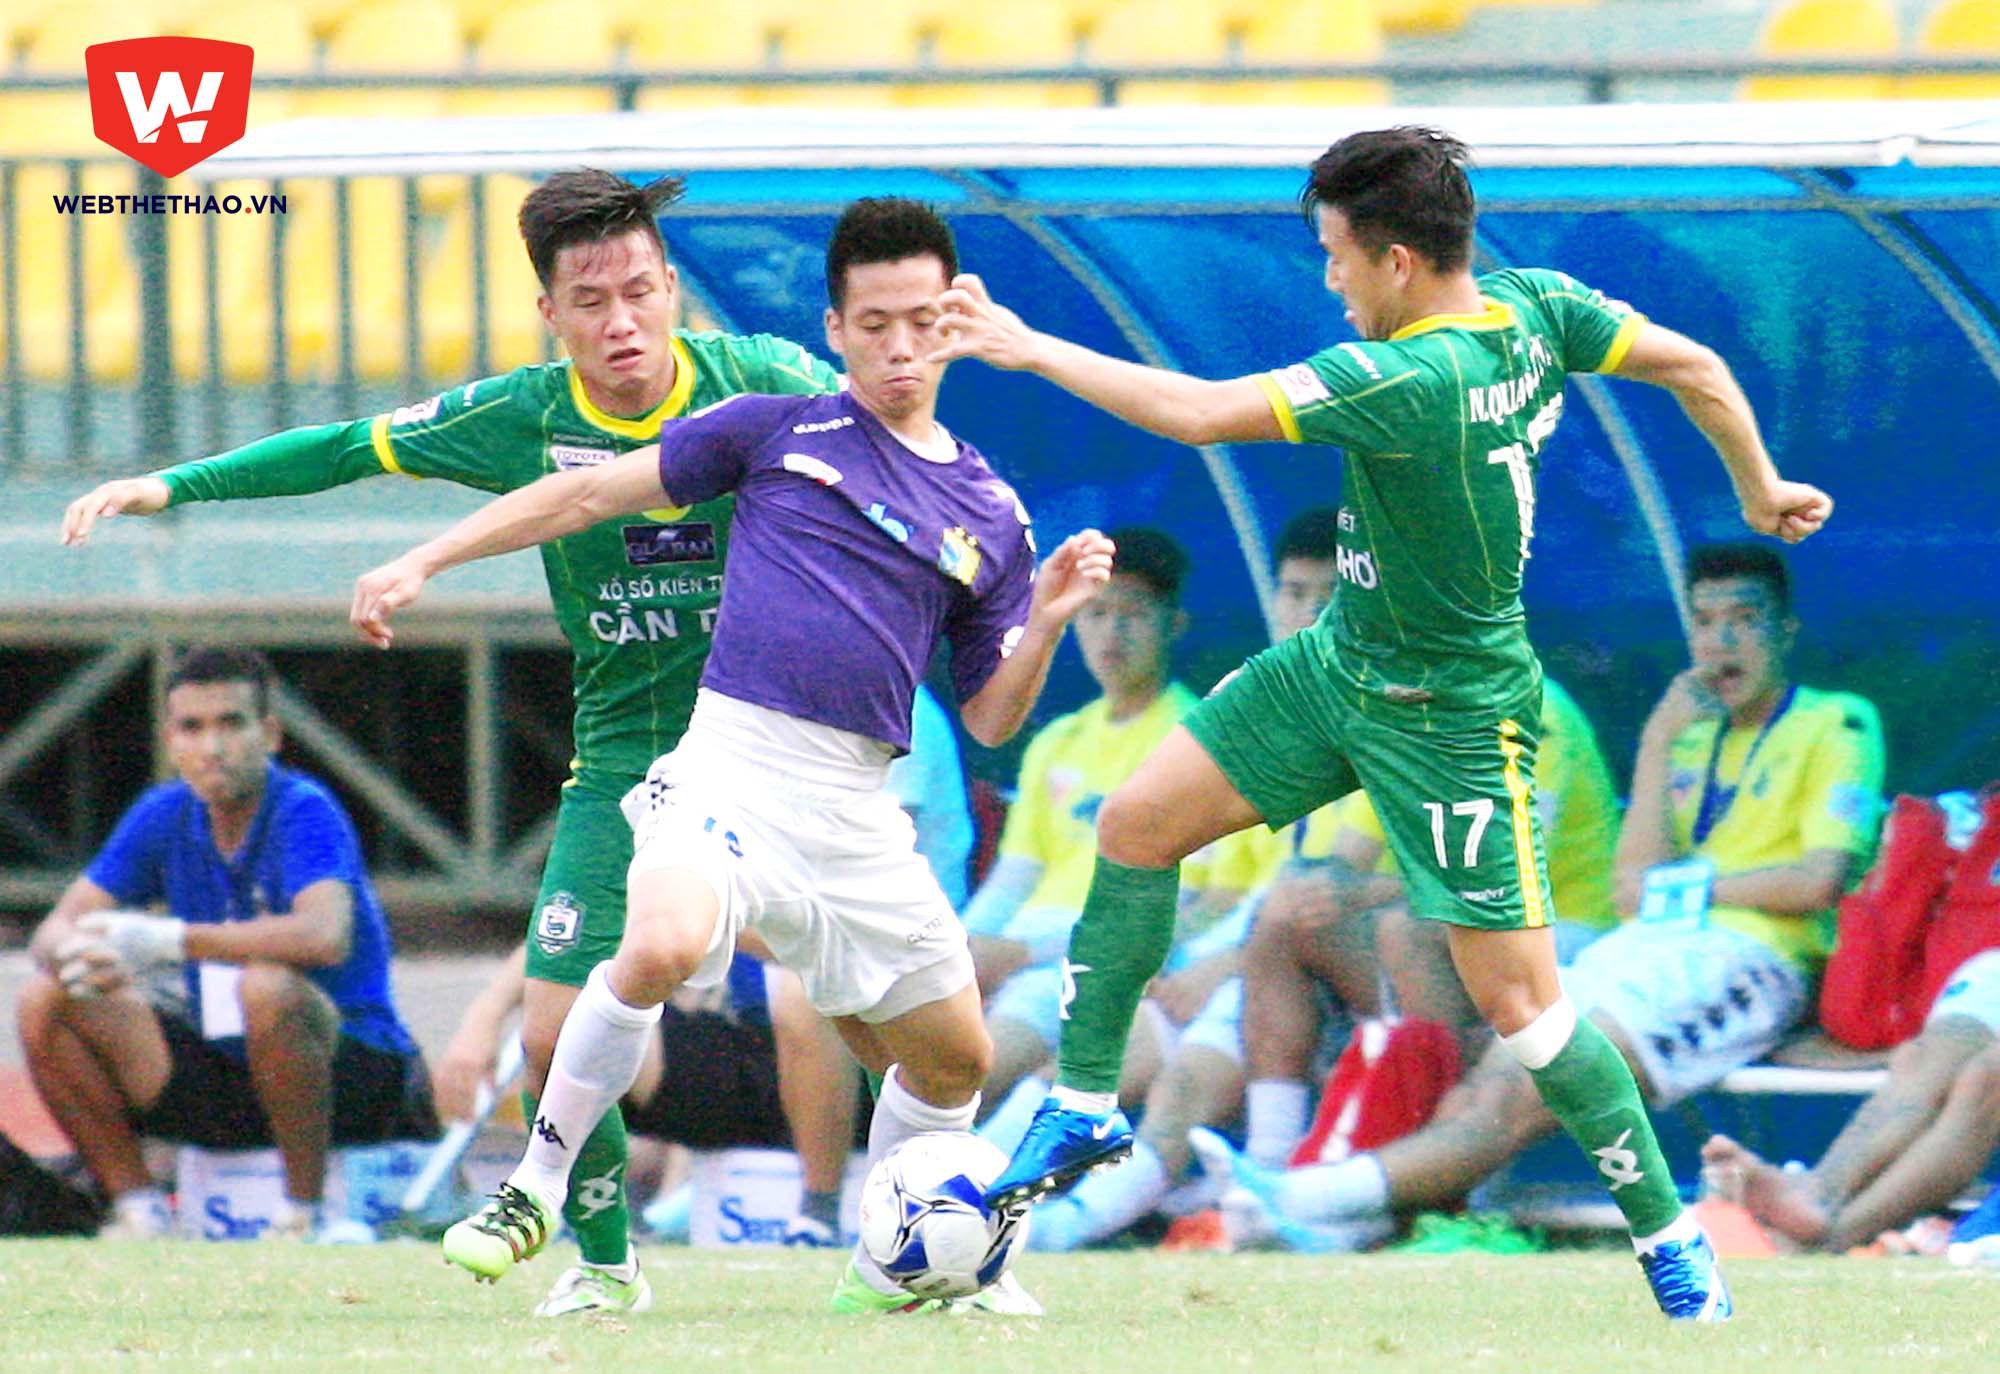 Cầu thủ Hà Nội T&T thường chủ quan khi đối đầu với những đội bóng tốp dưới. Ảnh: Dương Thu.